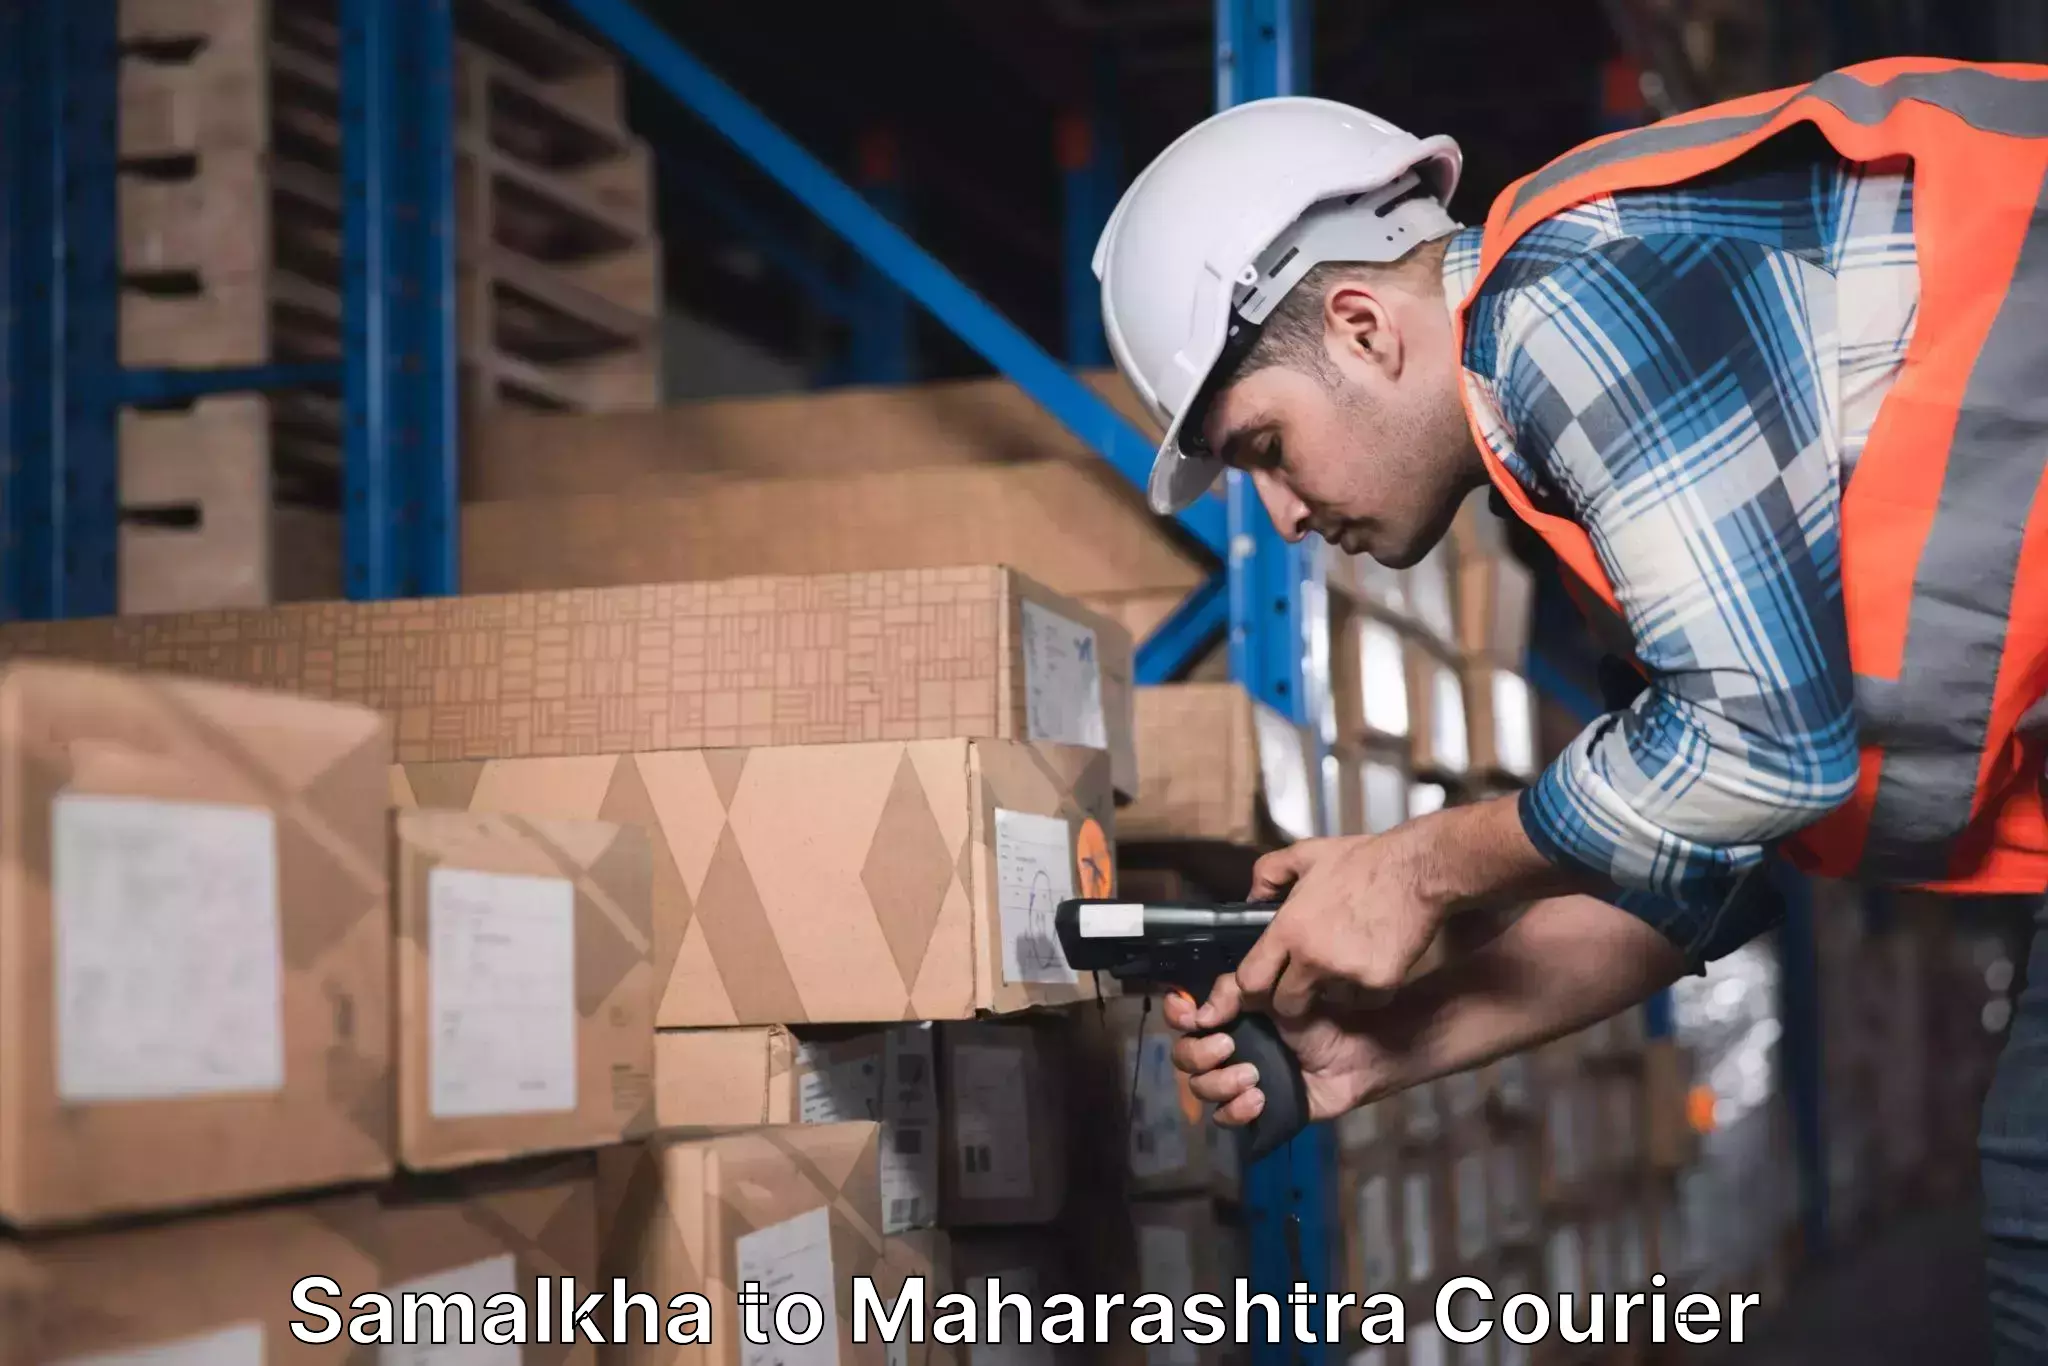 Express delivery solutions Samalkha to Maharashtra